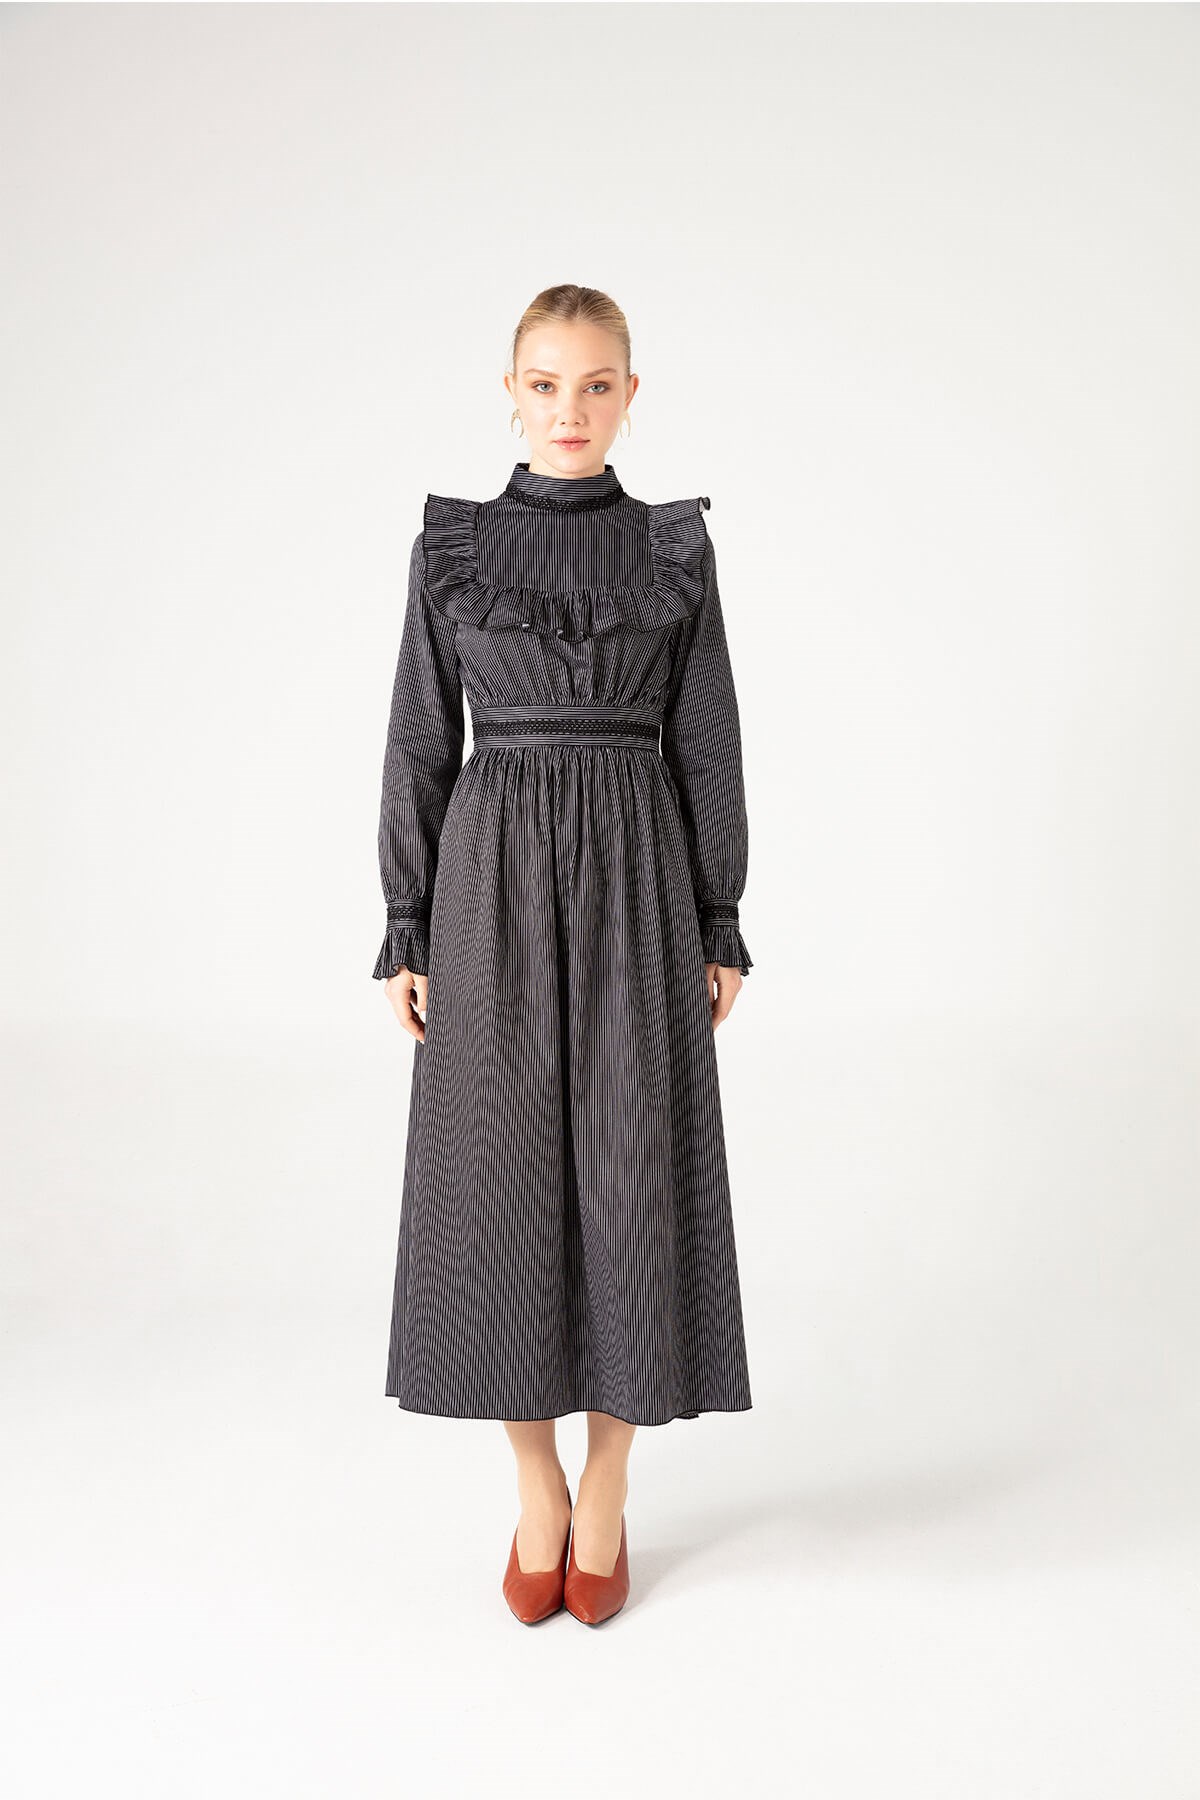 Çizgili Koton Elbise - JAQAR 2020 Black Koleksiyonu - Tesettür Giyim